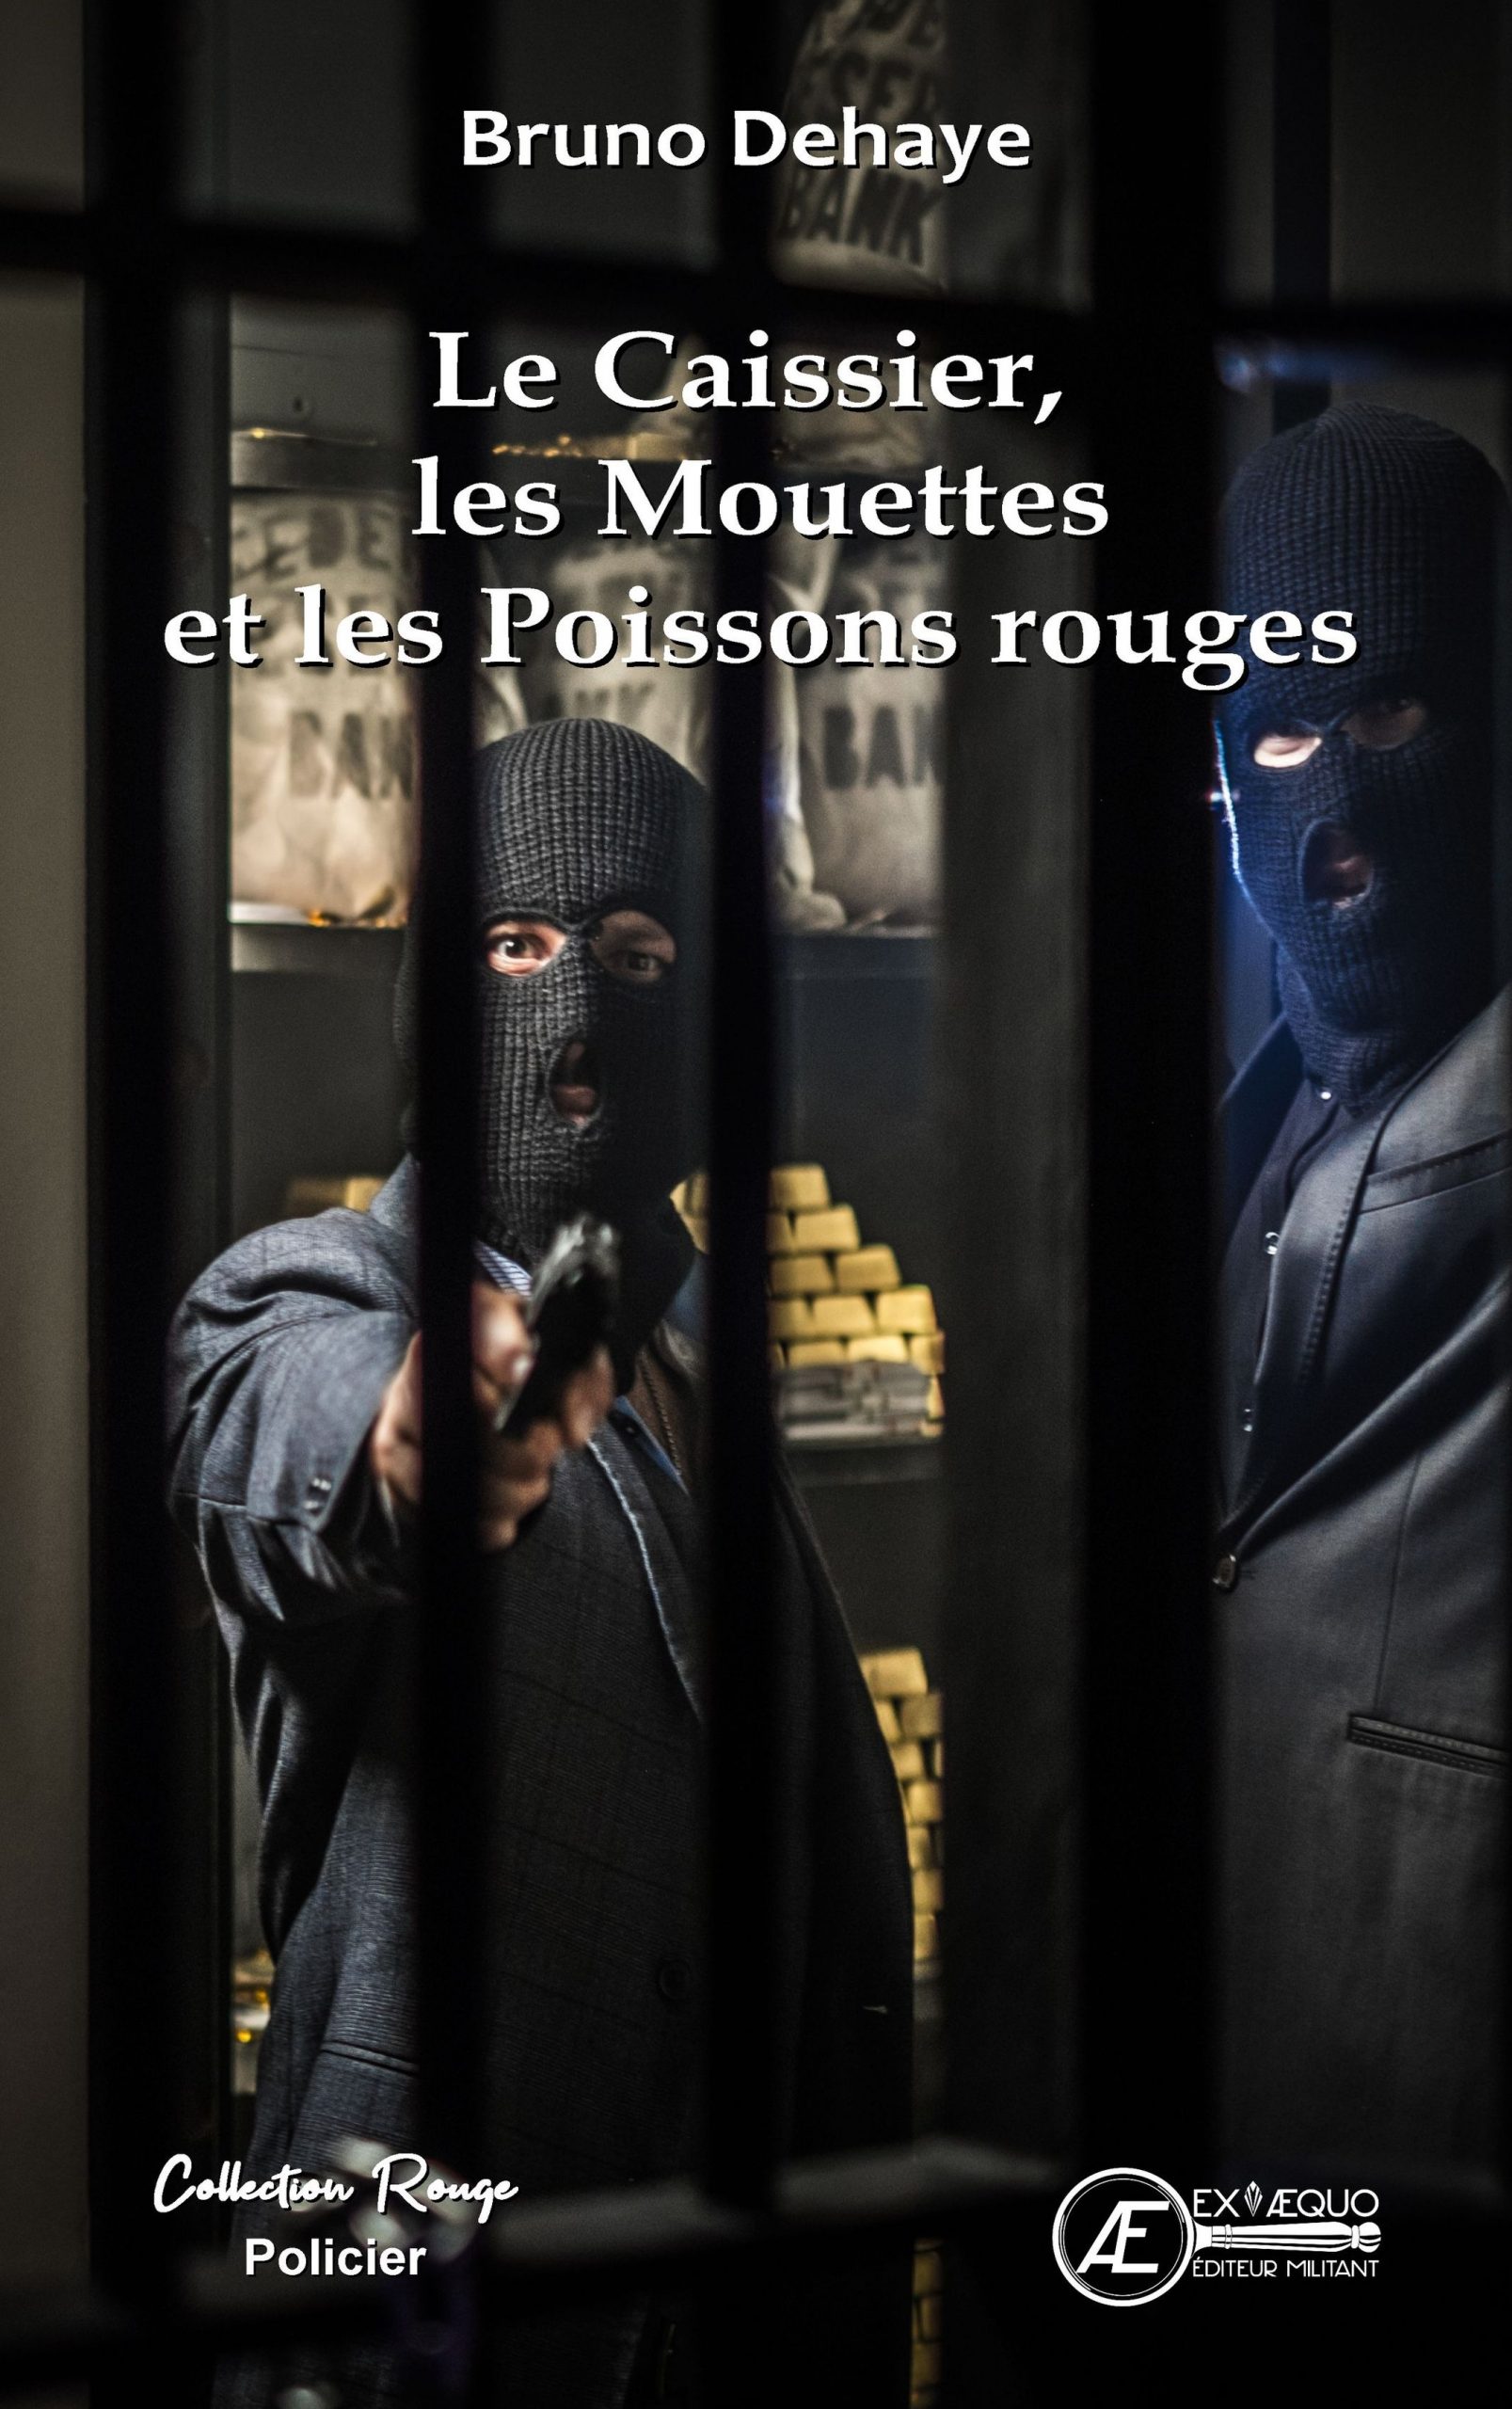 You are currently viewing Le Caissier les Mouettes et les Poissons rouges